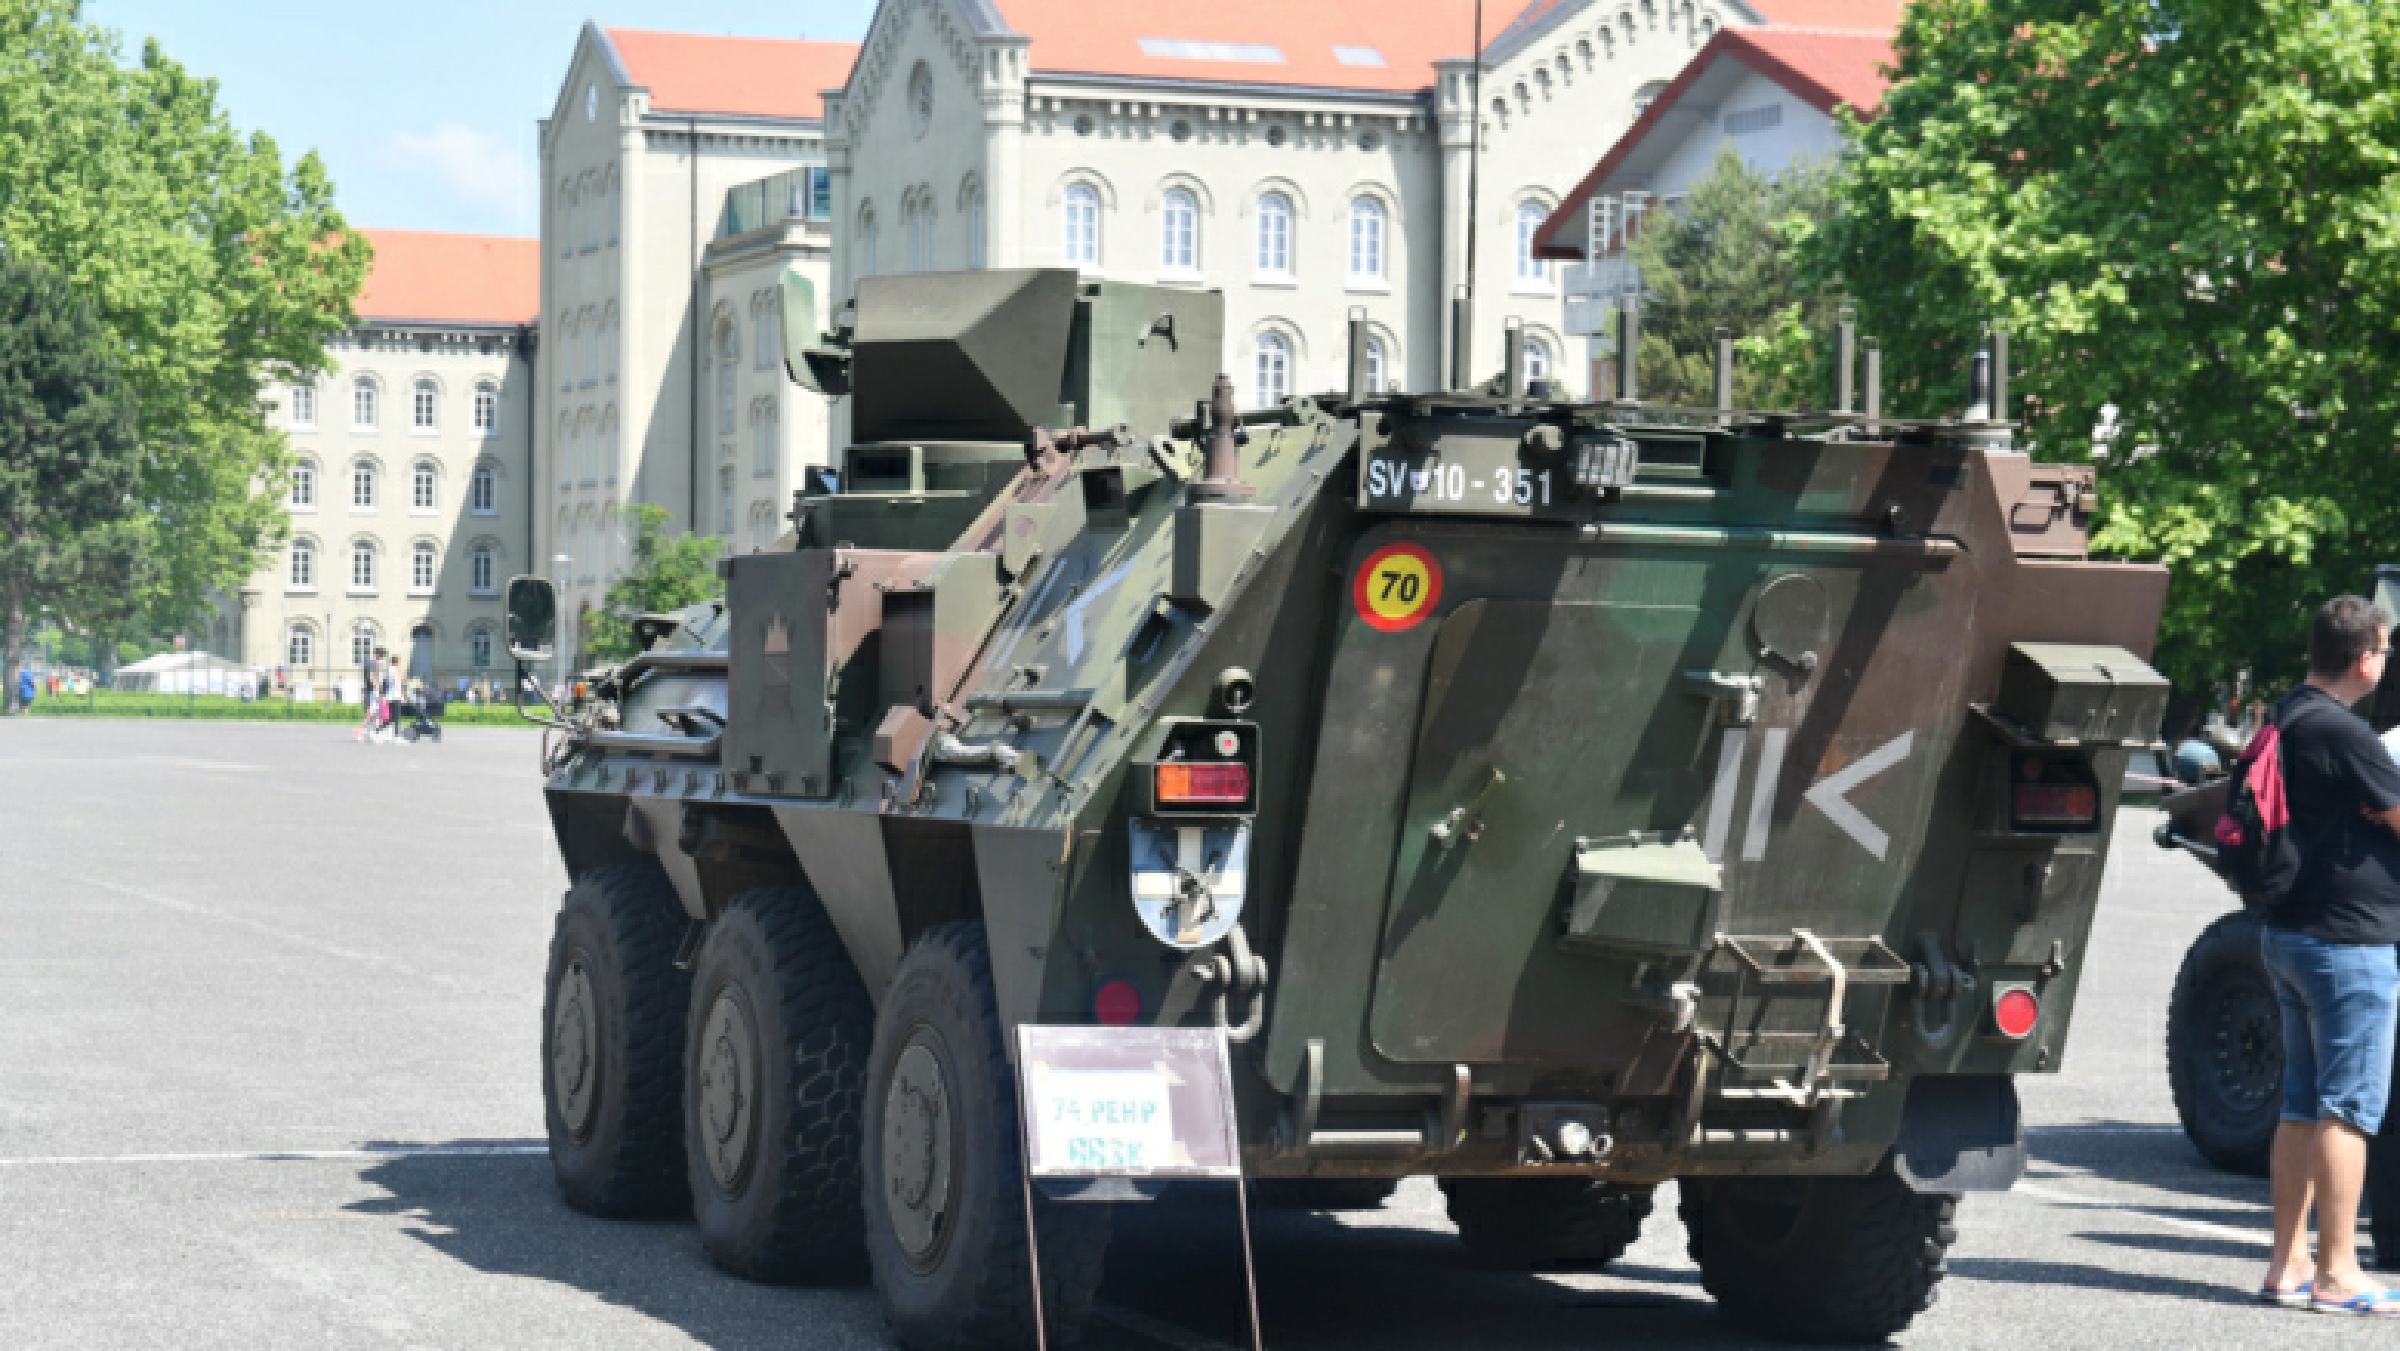 DNEVNA: Slovenska vojska že letos z novo opremo, prenova mariborske vojašnice čez dve leti